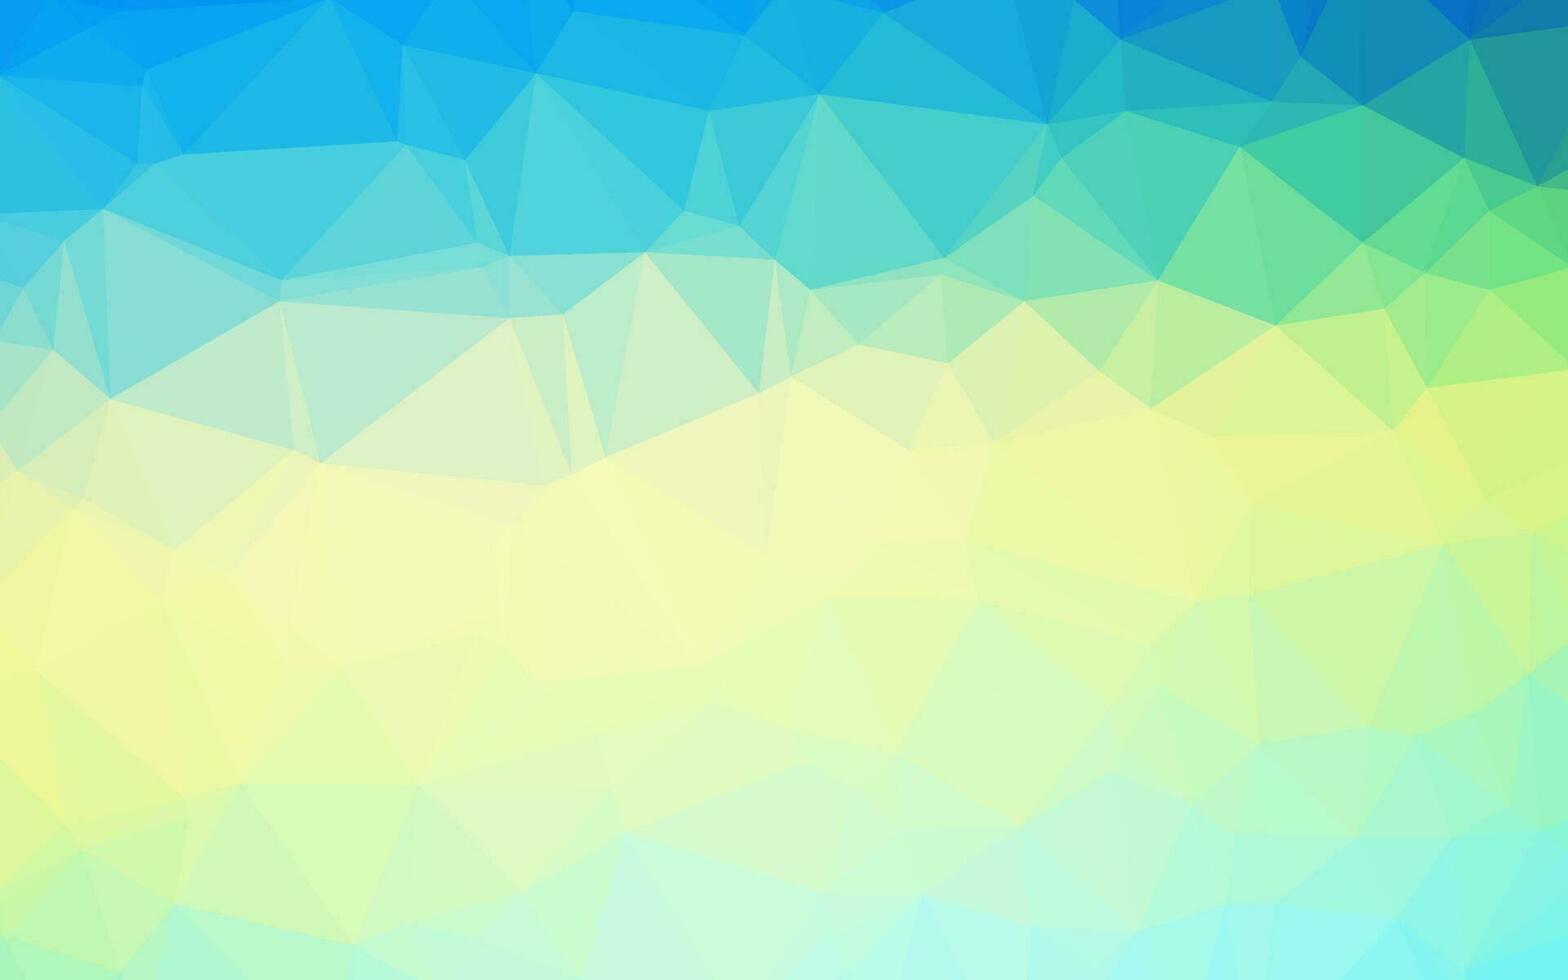 ljusblå, gul vektor suddig triangel mall.